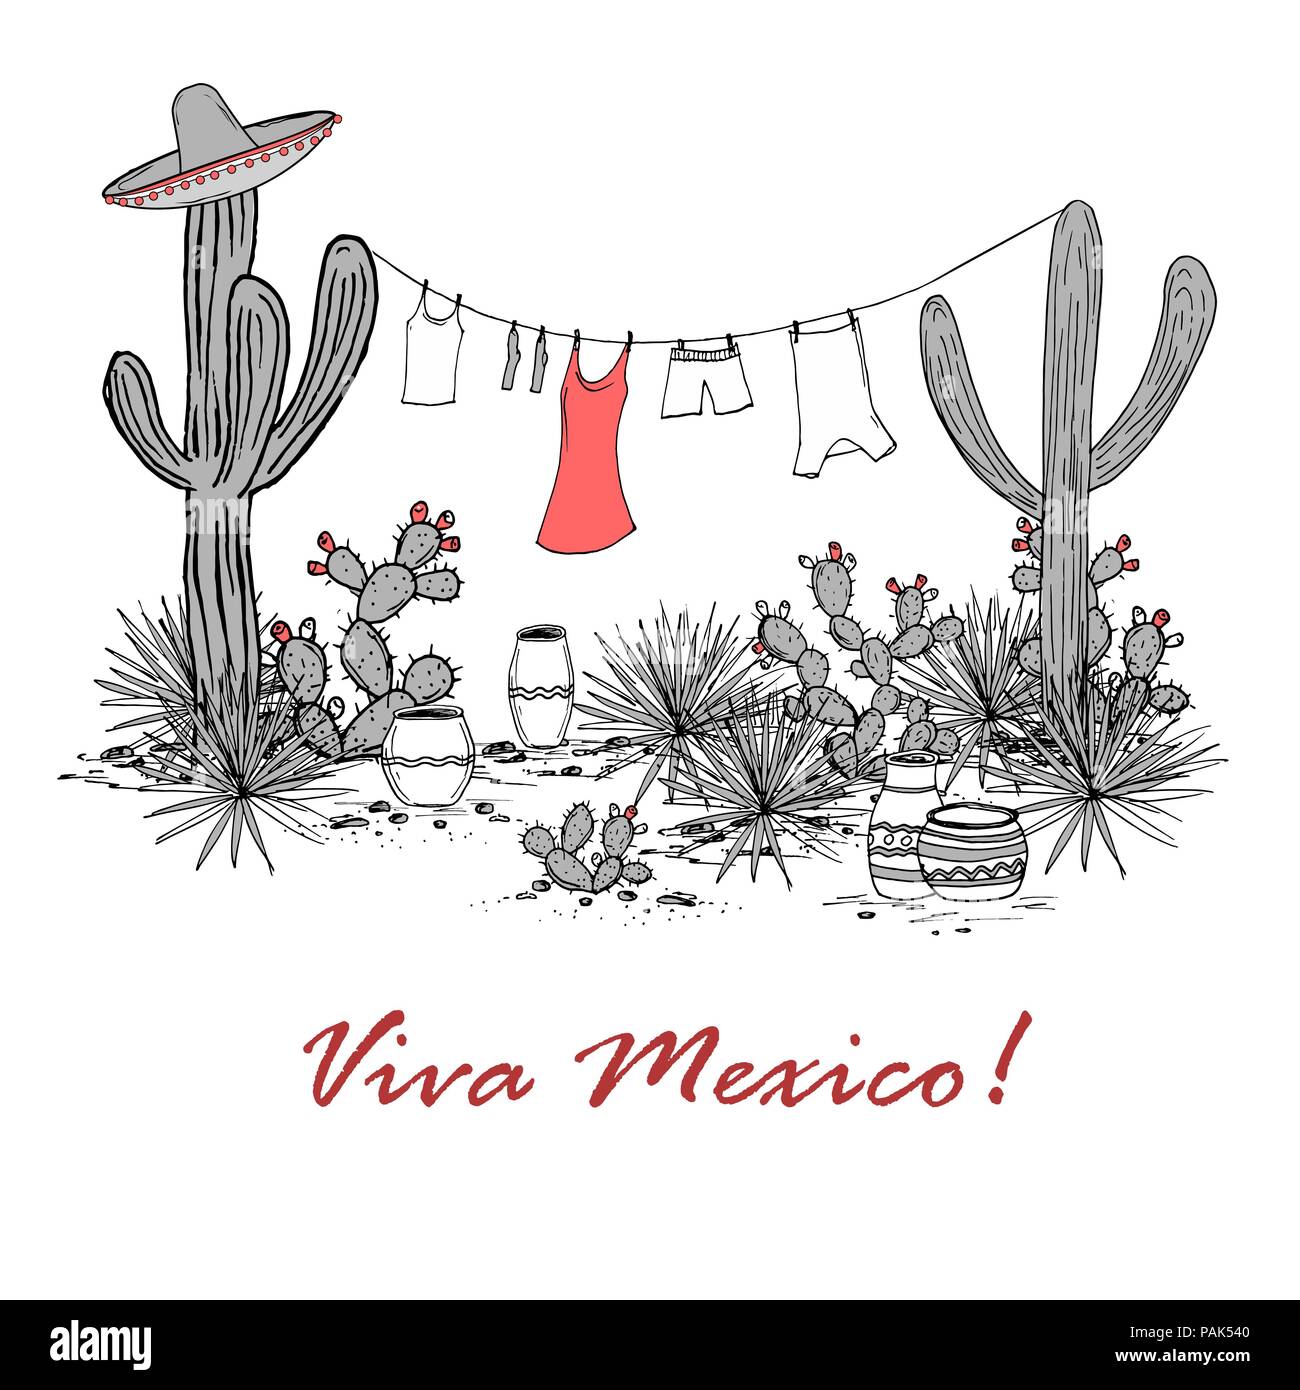 Lustig Hand gezeichnet illustraytion mit Gläsern, Blue Agave Feigenkaktus, und Wäsche aufhängen an einer Wäscheleine. Lateinamerikanischen Hintergrund. Mexikanische Landschaft Stock Vektor